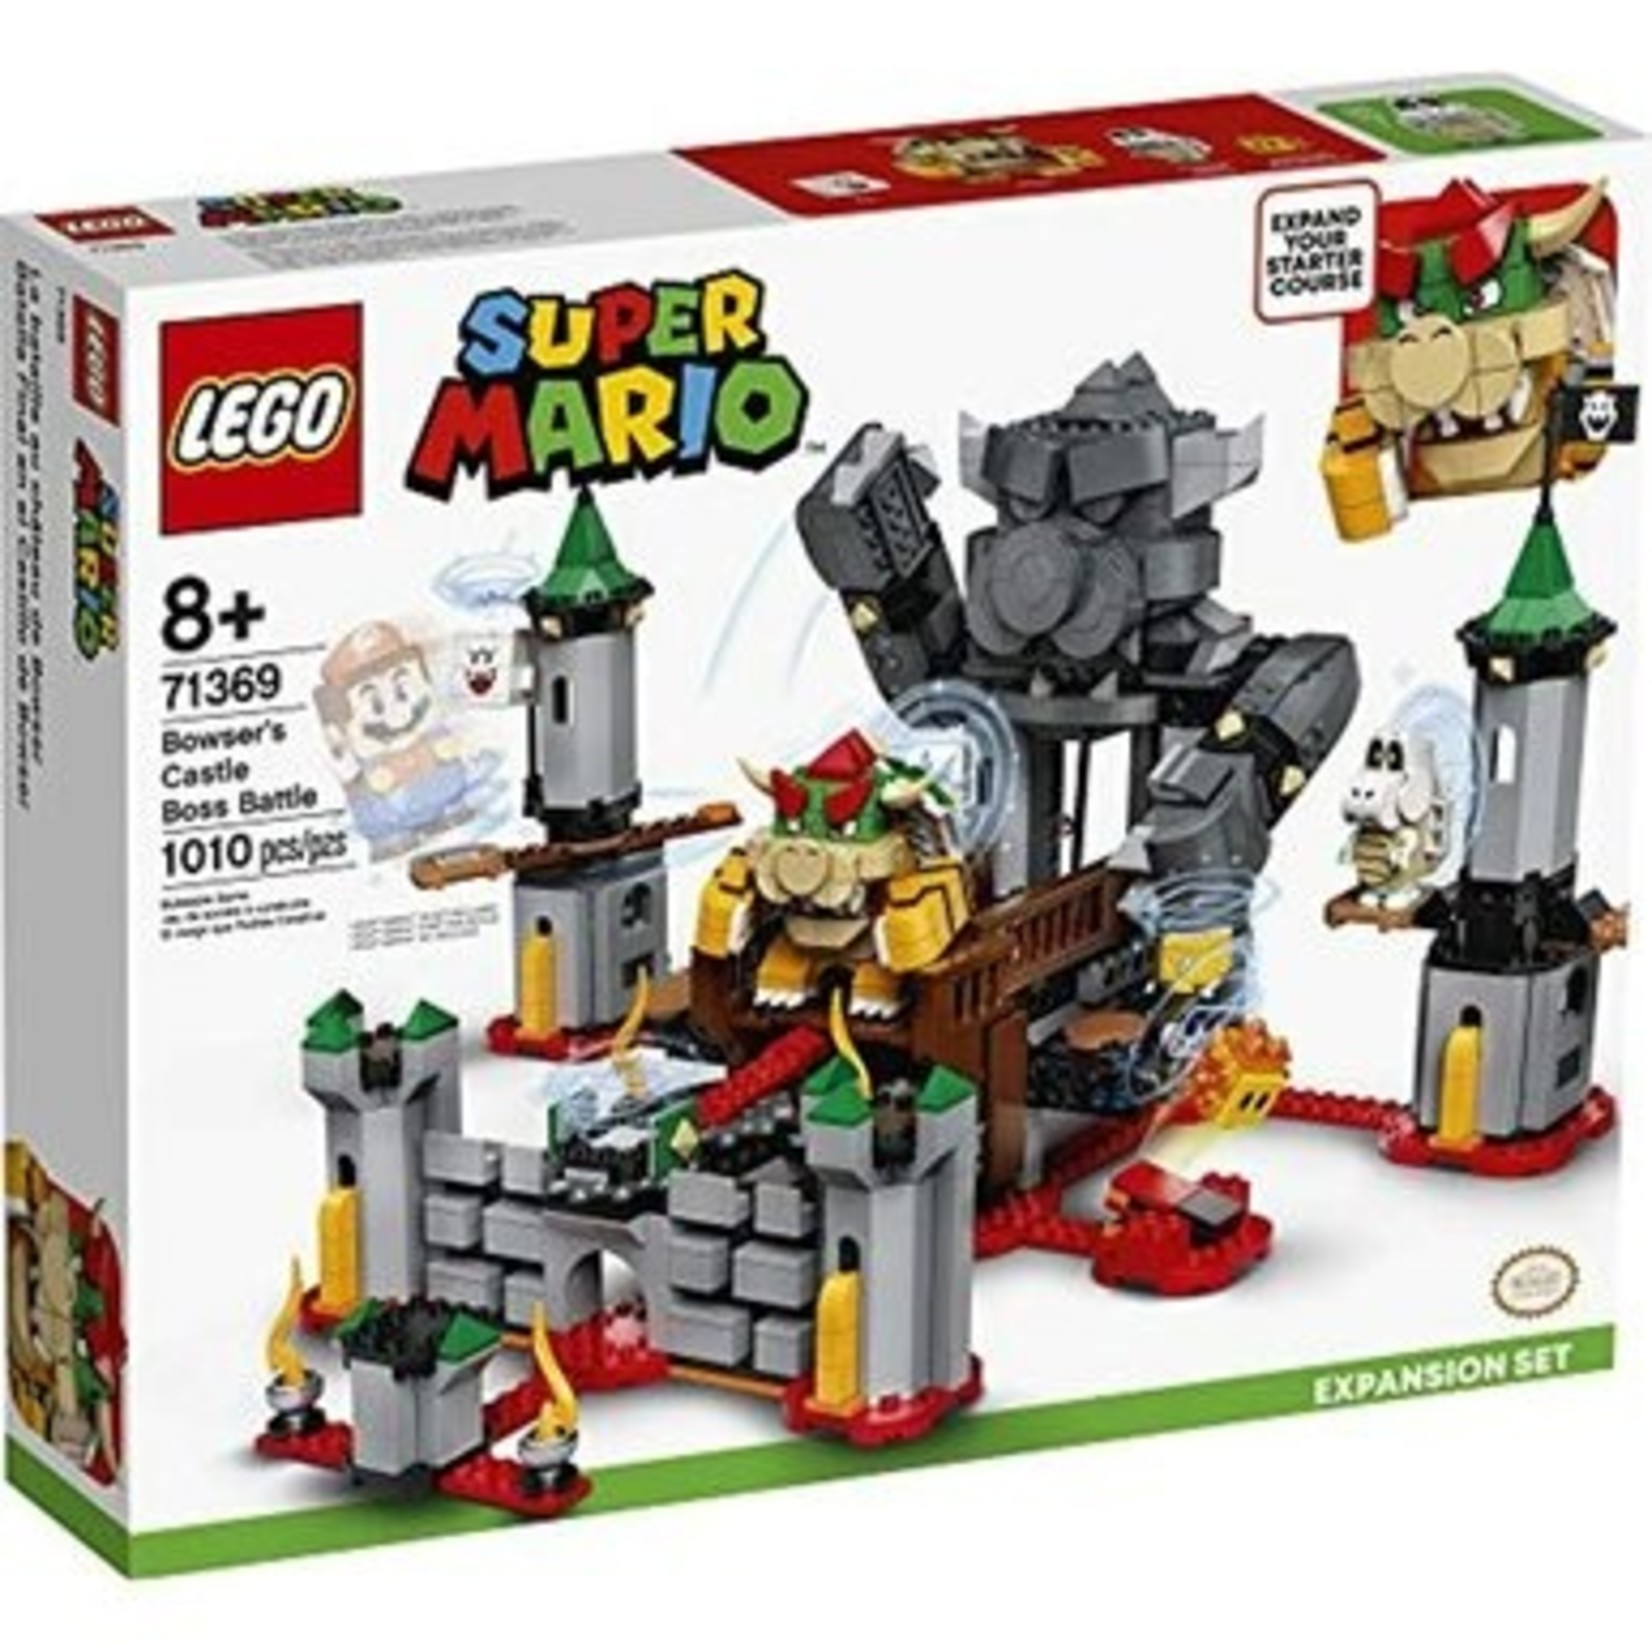 LEGO LEGO Super Mario Bowser's Castle Boss Battle Expansion Set 71369